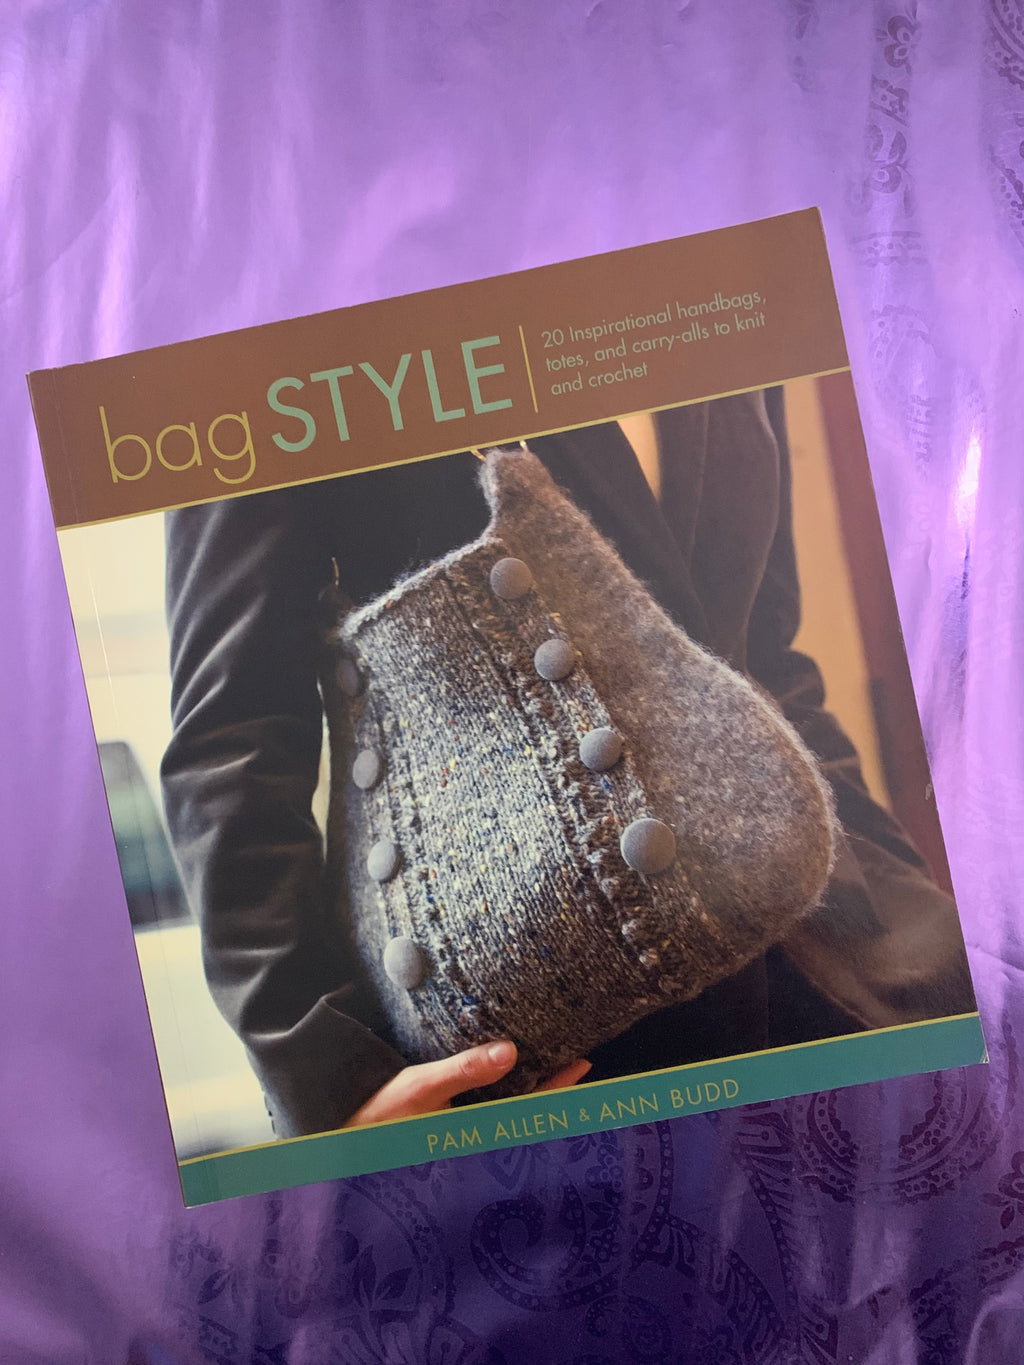 Bag Style- By Pam Allen & Ann Budd